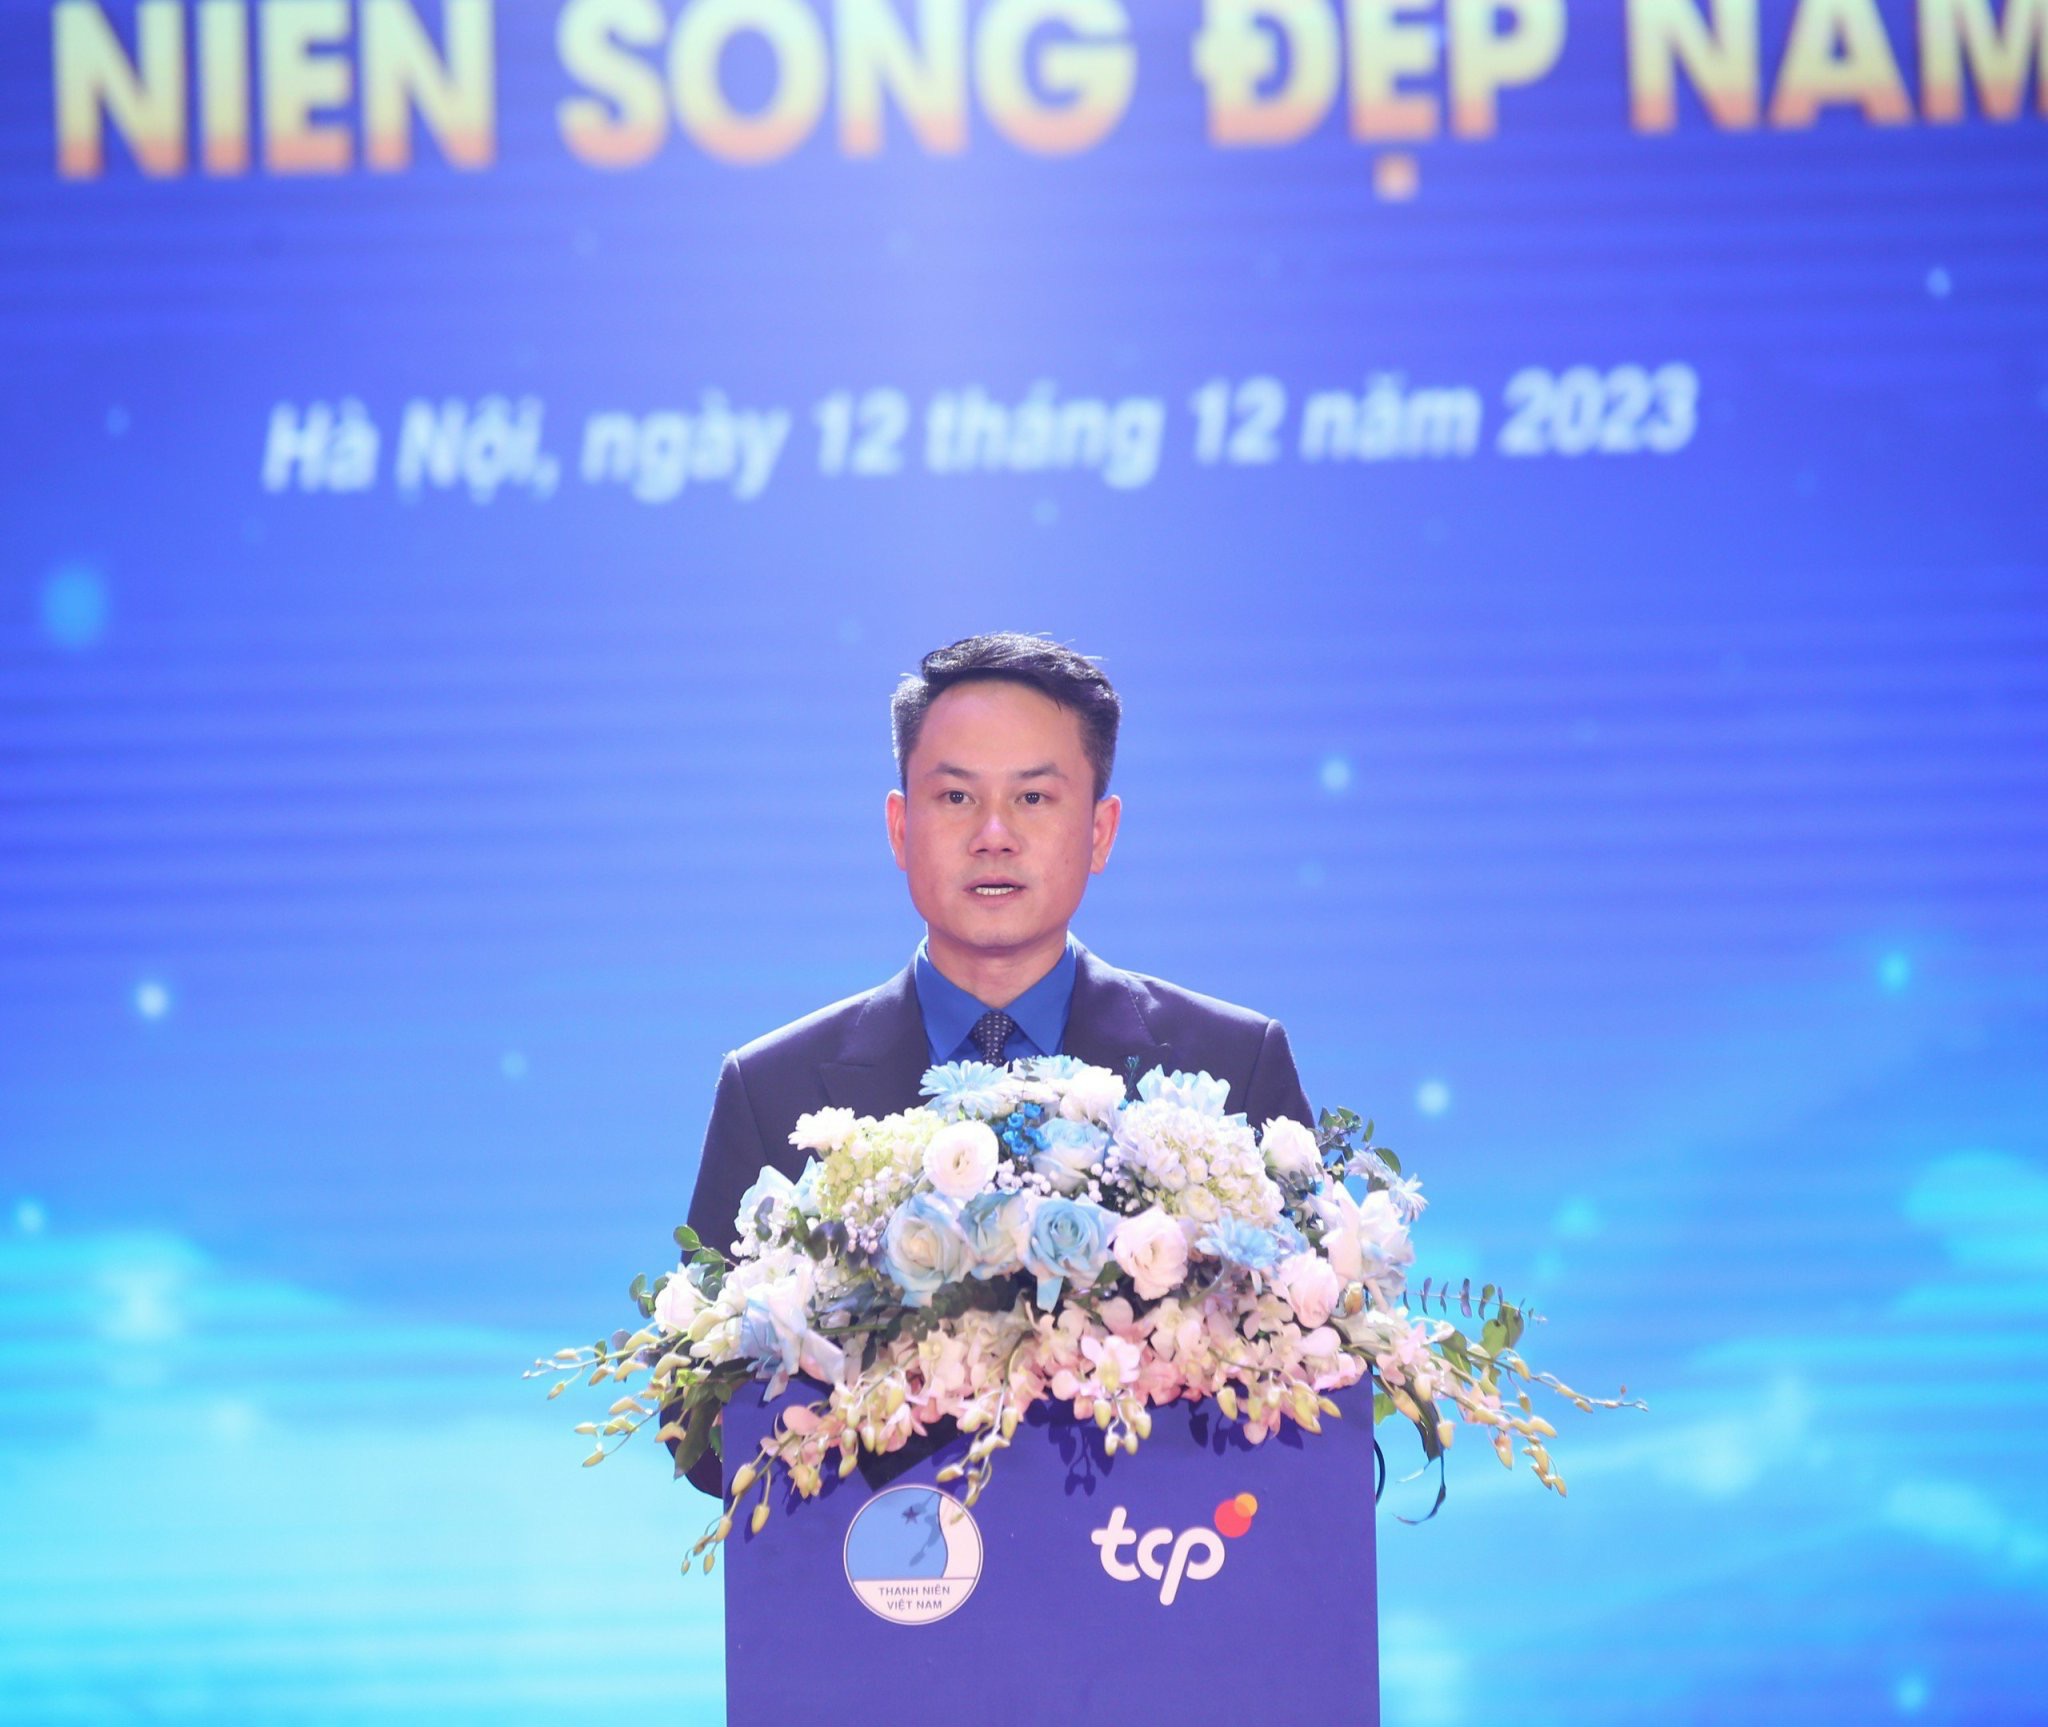 Phó Chủ tịch Thường trực Nguyễn Kim Quy phát biểu tại lễ trao giải “Thanh niên sống đẹp” năm 2023. Ảnh: BTC